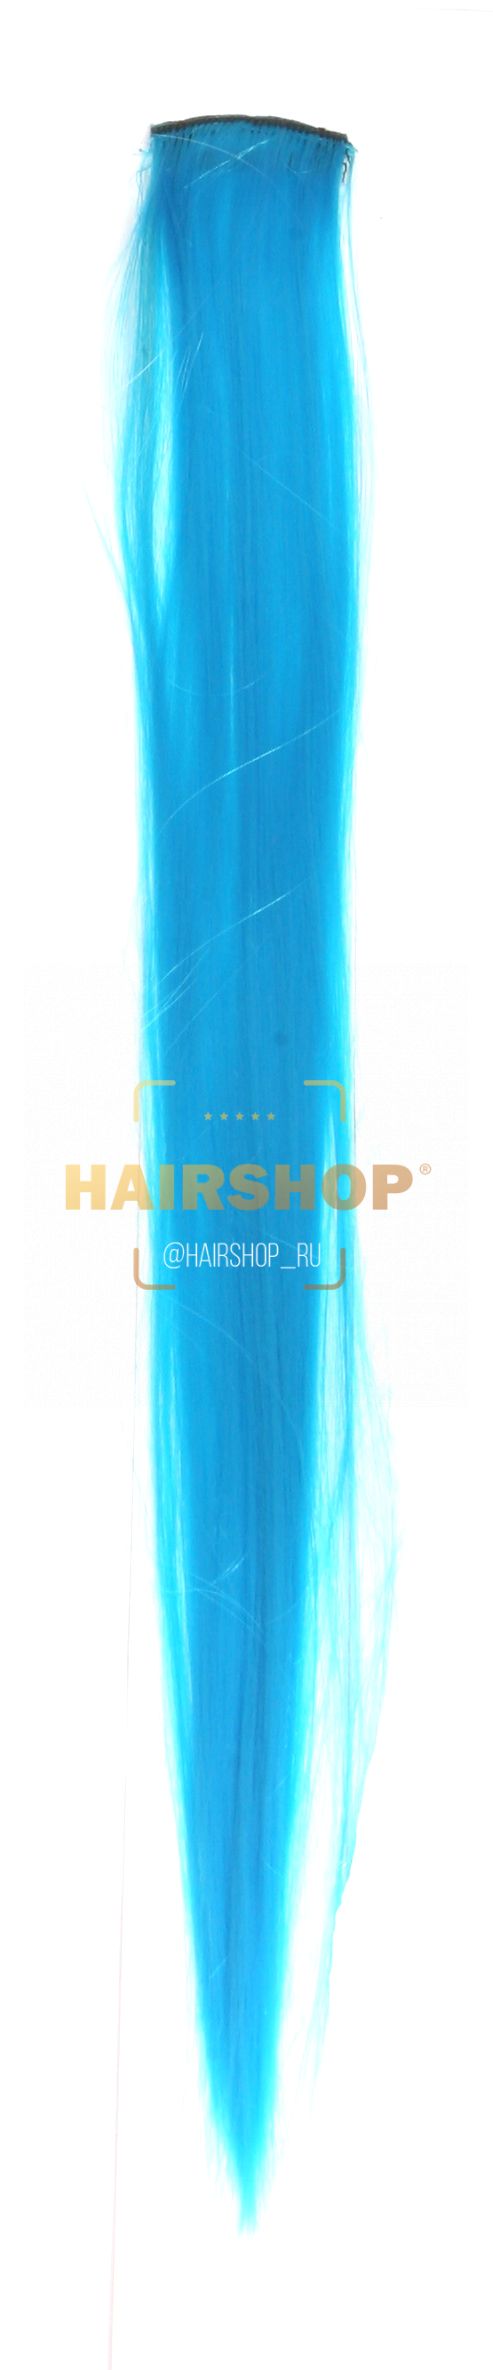 Декоративная прядь синтетическая Г16 (нежно-голубой) Hairshop